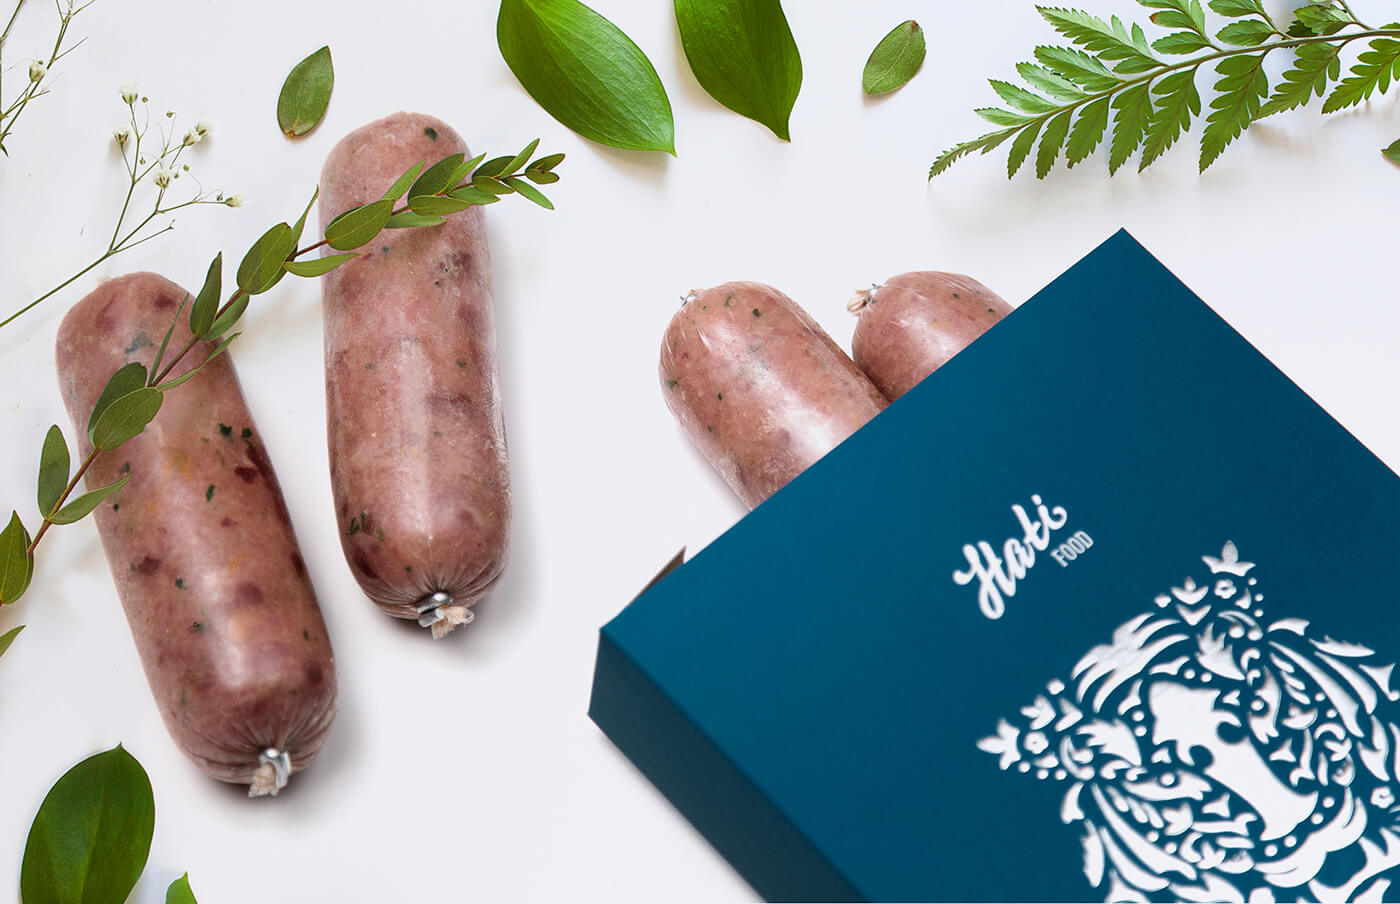 Дизайн упаковки бренда премиальных кормов для домашних животных Hati Food. Разработка логотипа и брендинг.